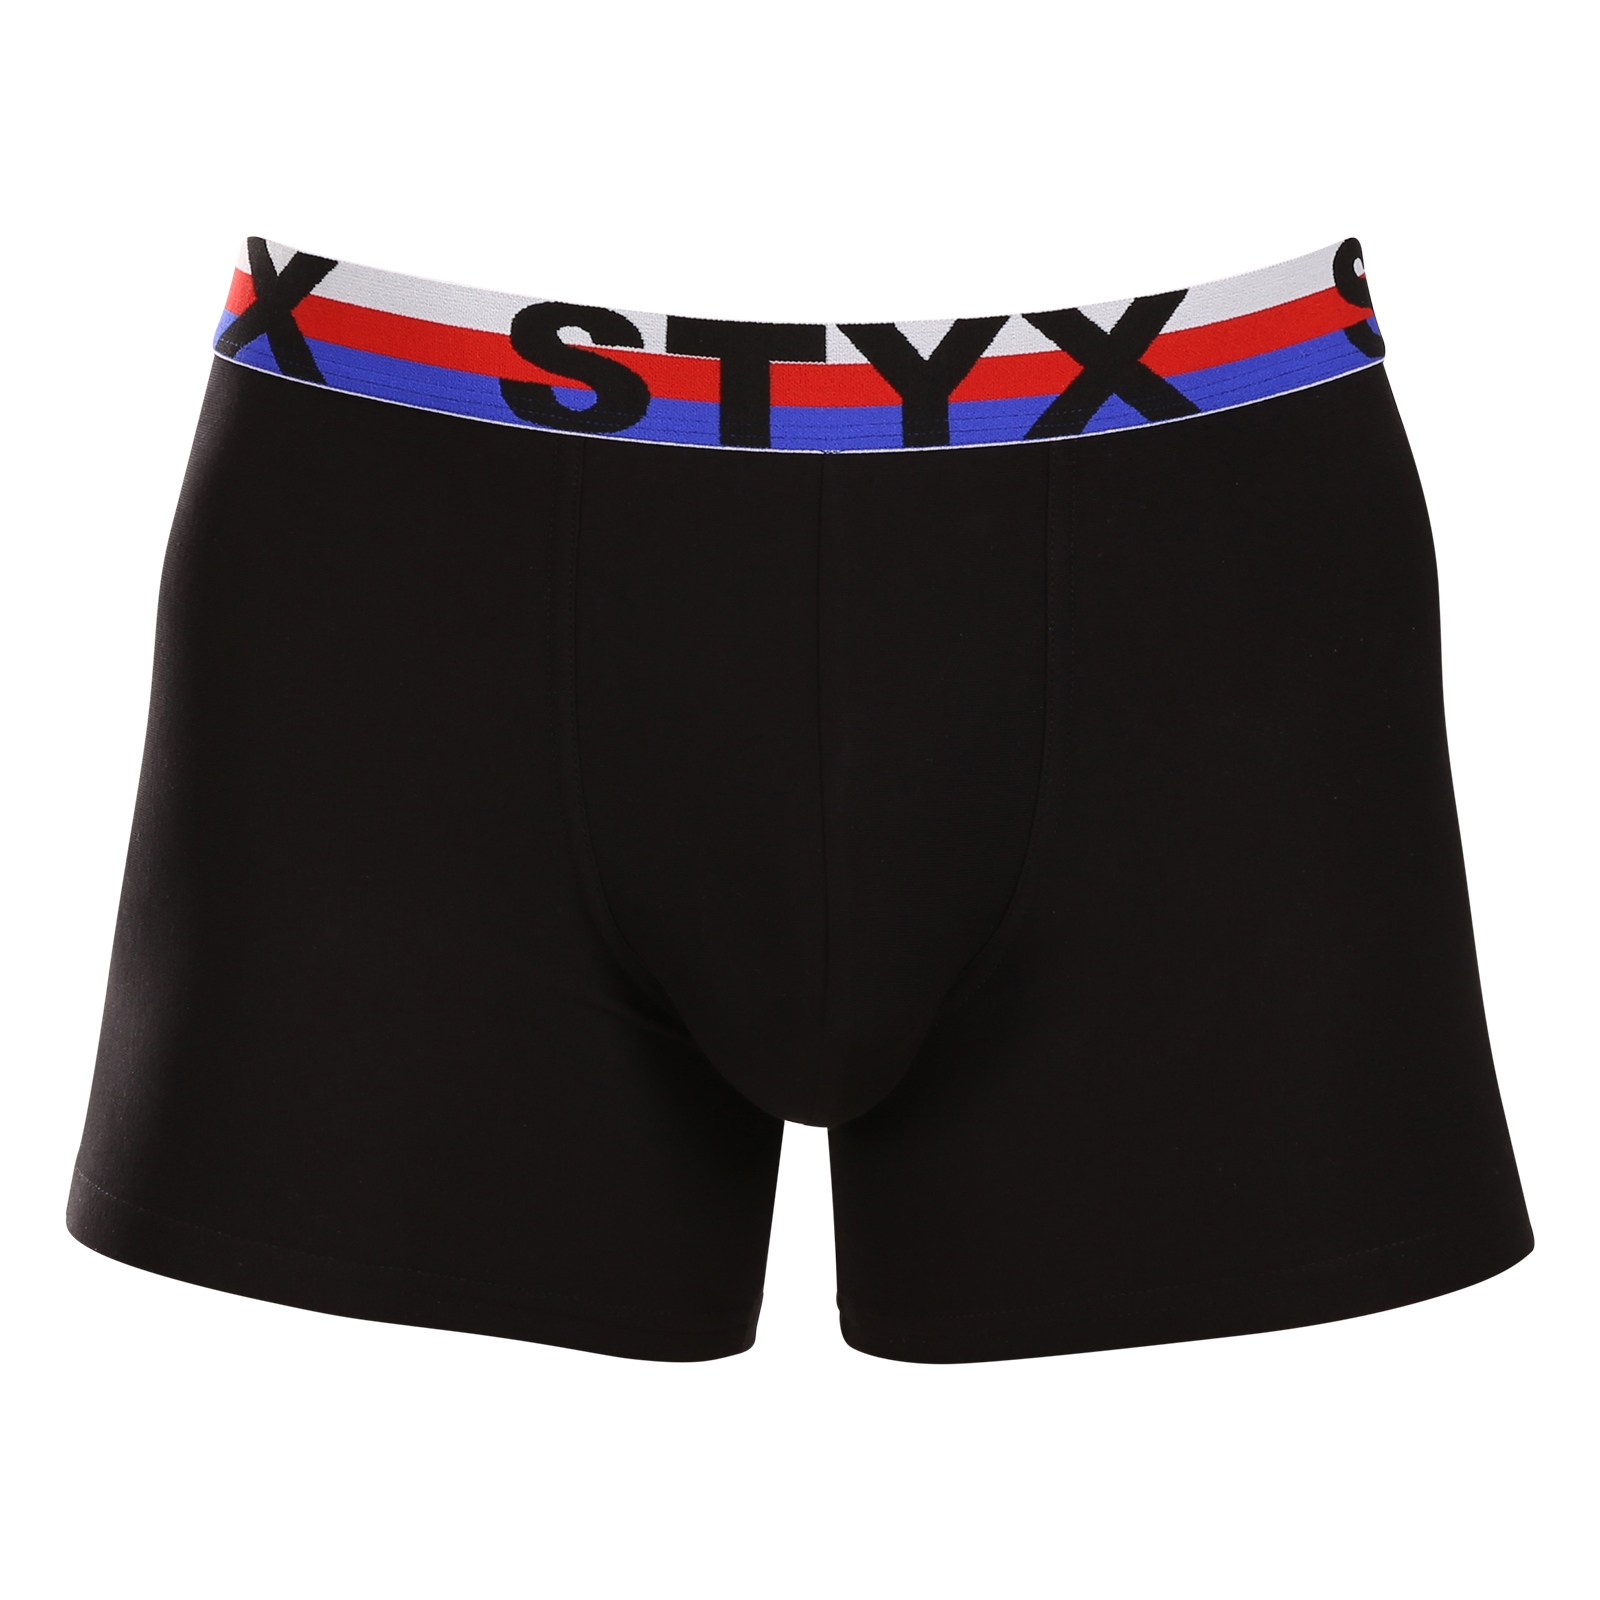 E-shop Pánské boxerky Styx long sportovní guma černé trikolóra